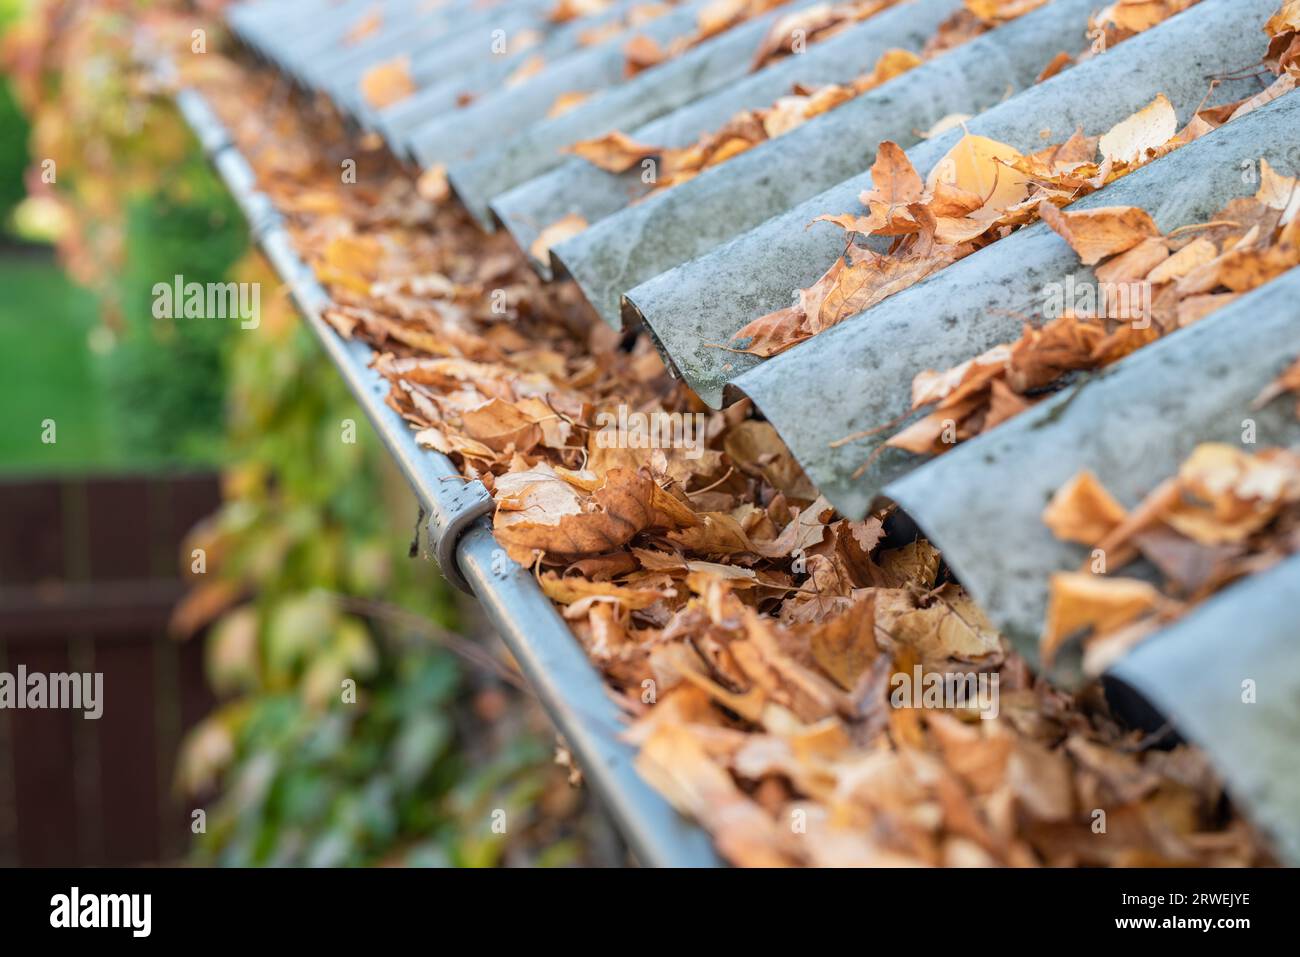 Rain gutter full of autumn leaves Stock Photo